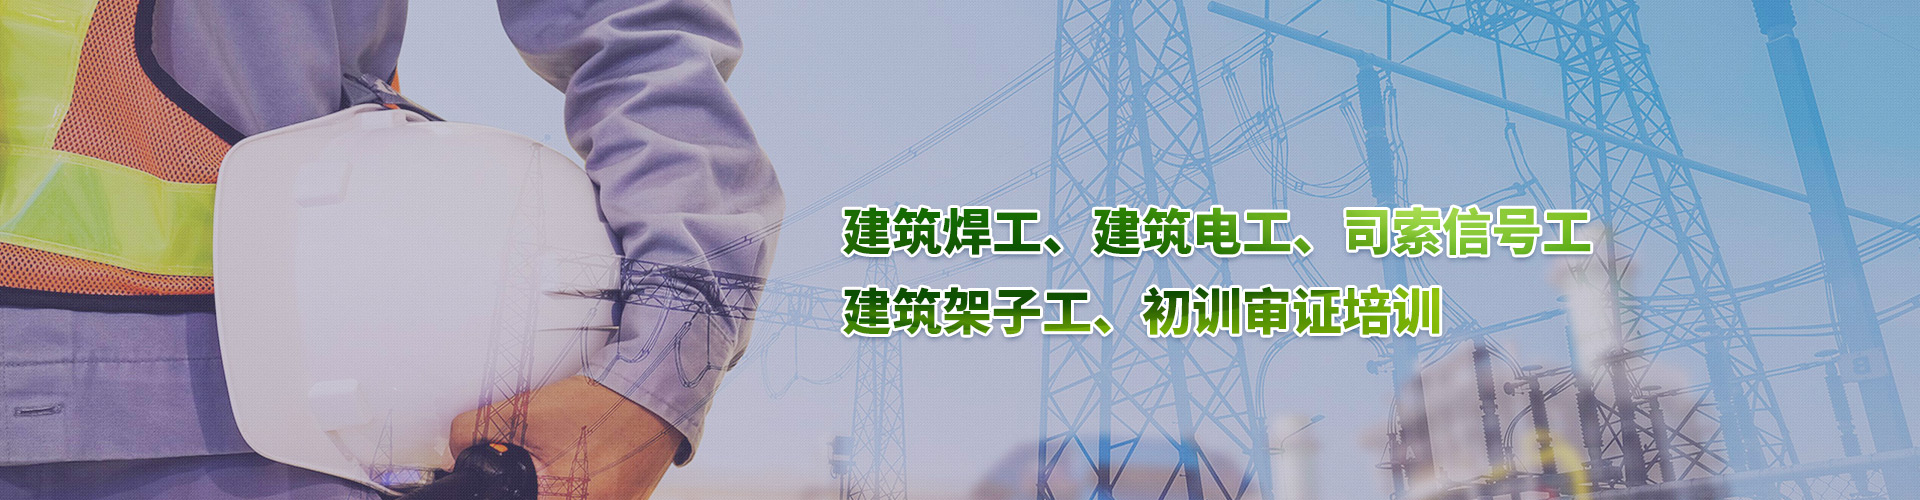 上海低壓電工操作證培訓機構